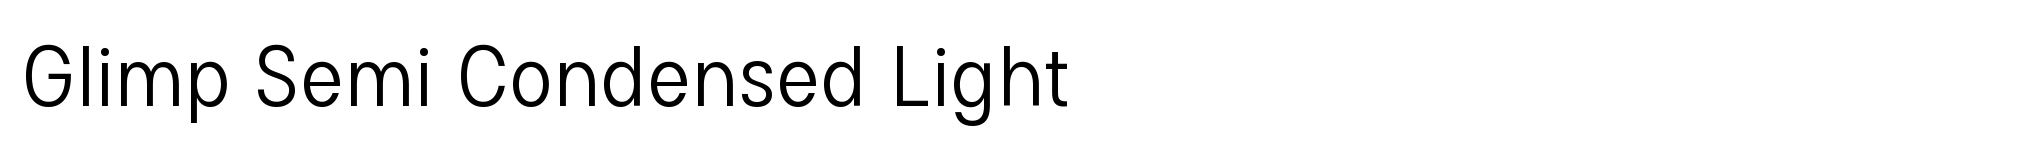 Glimp Semi Condensed Light image